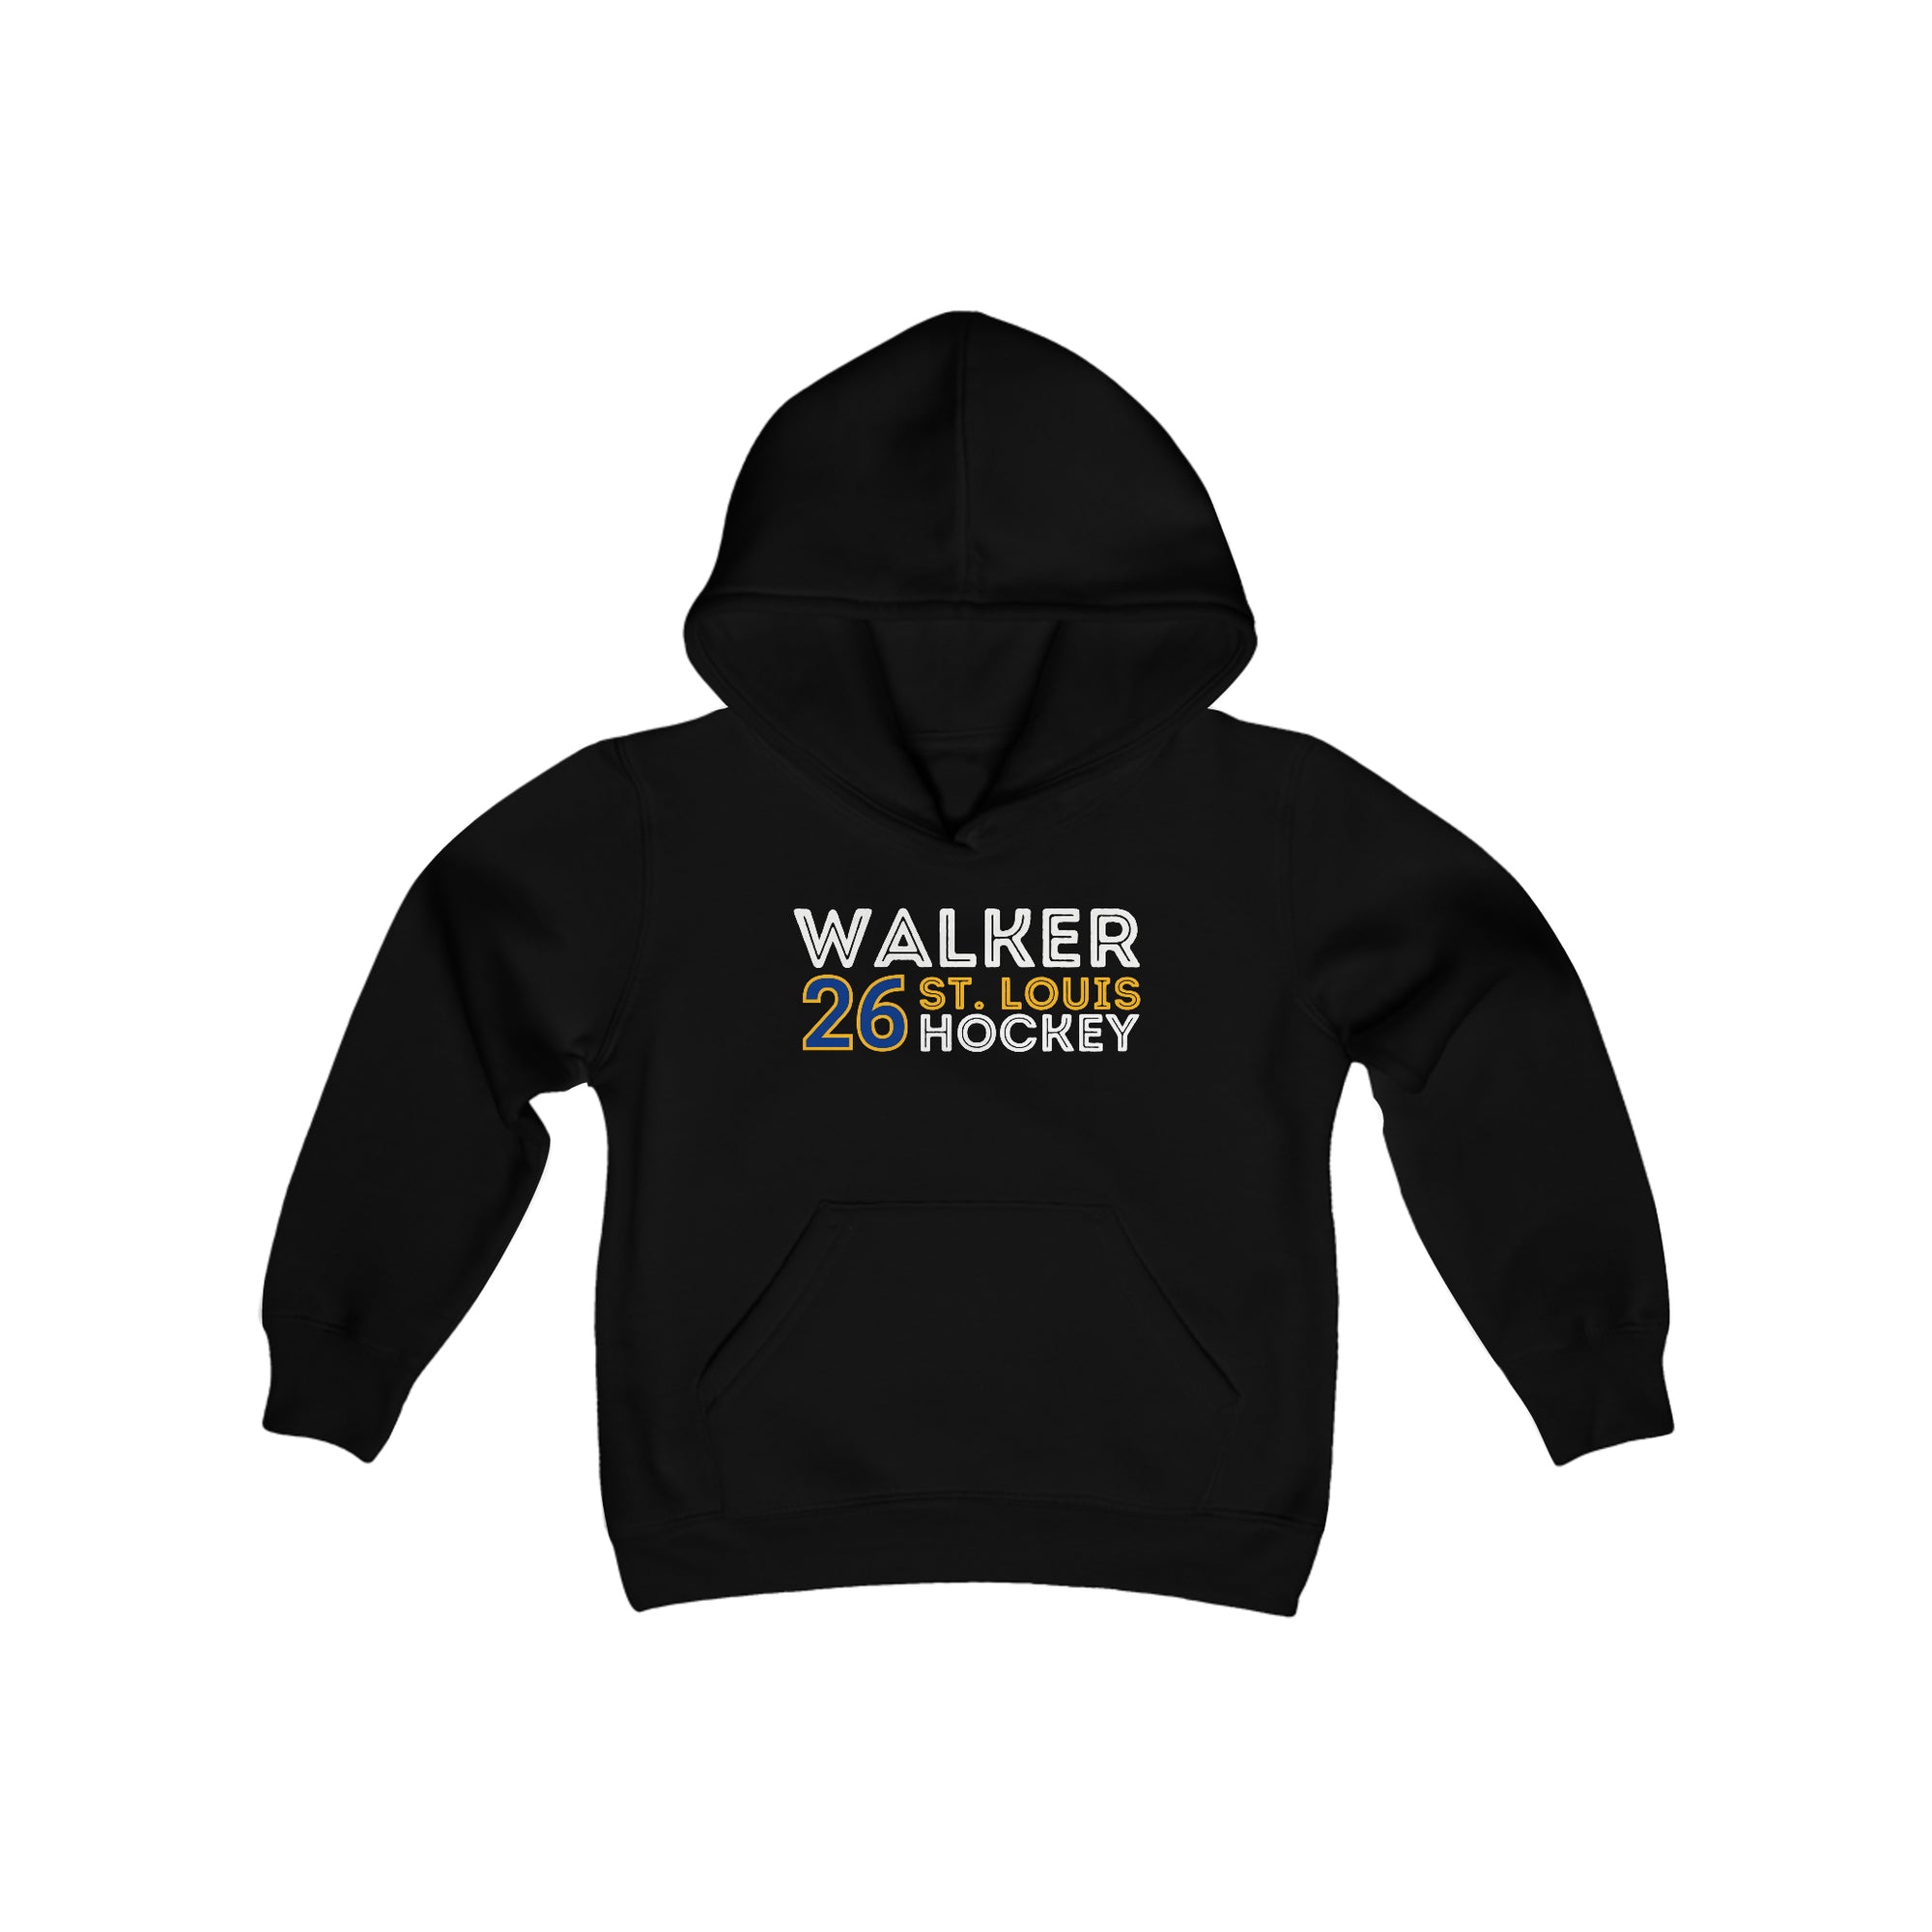 Walker 26 St. Louis Hockey Grafitti Wall Design Youth Hooded Sweatshirt